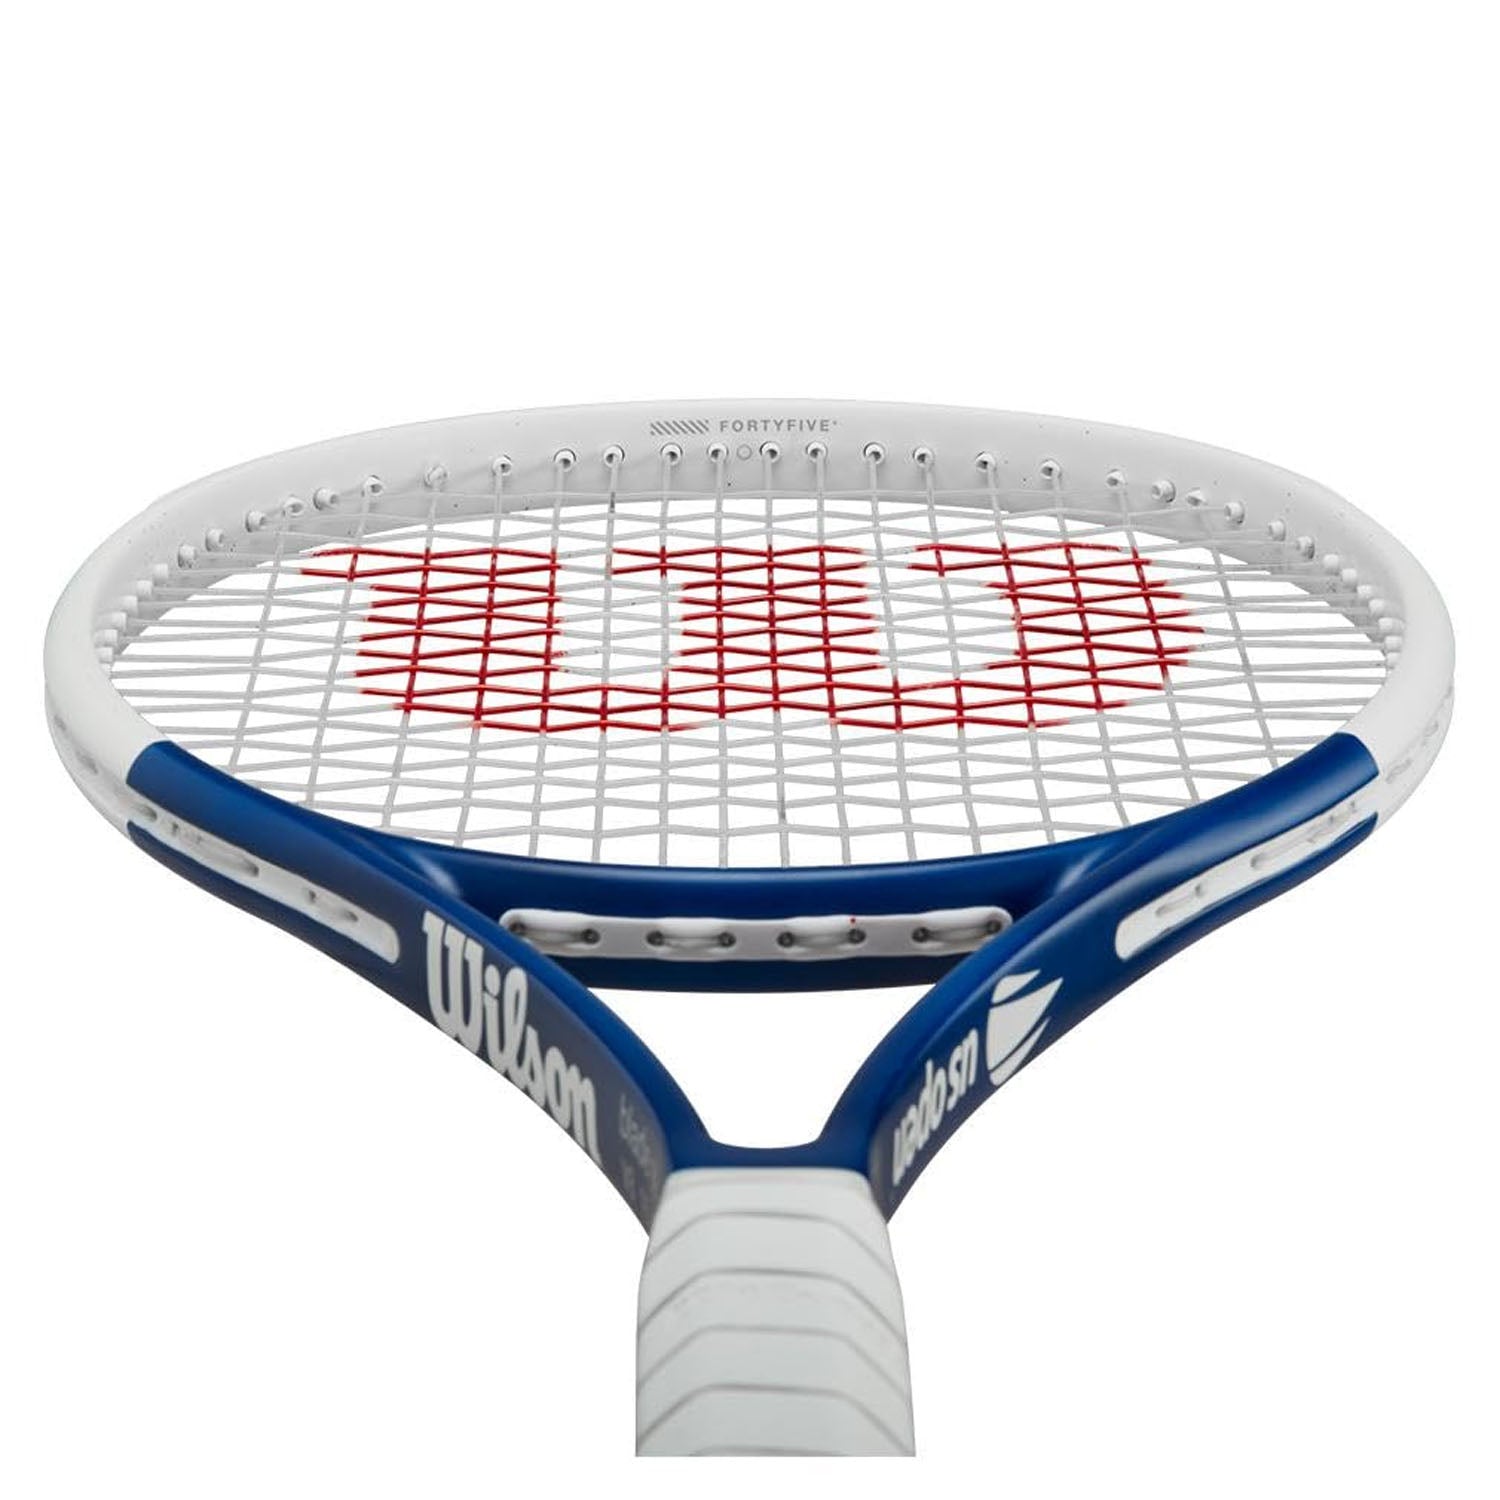 Wilson Blade 98 V8 US Open 2023 Unstrung Tennis Racquet - Best Price online Prokicksports.com